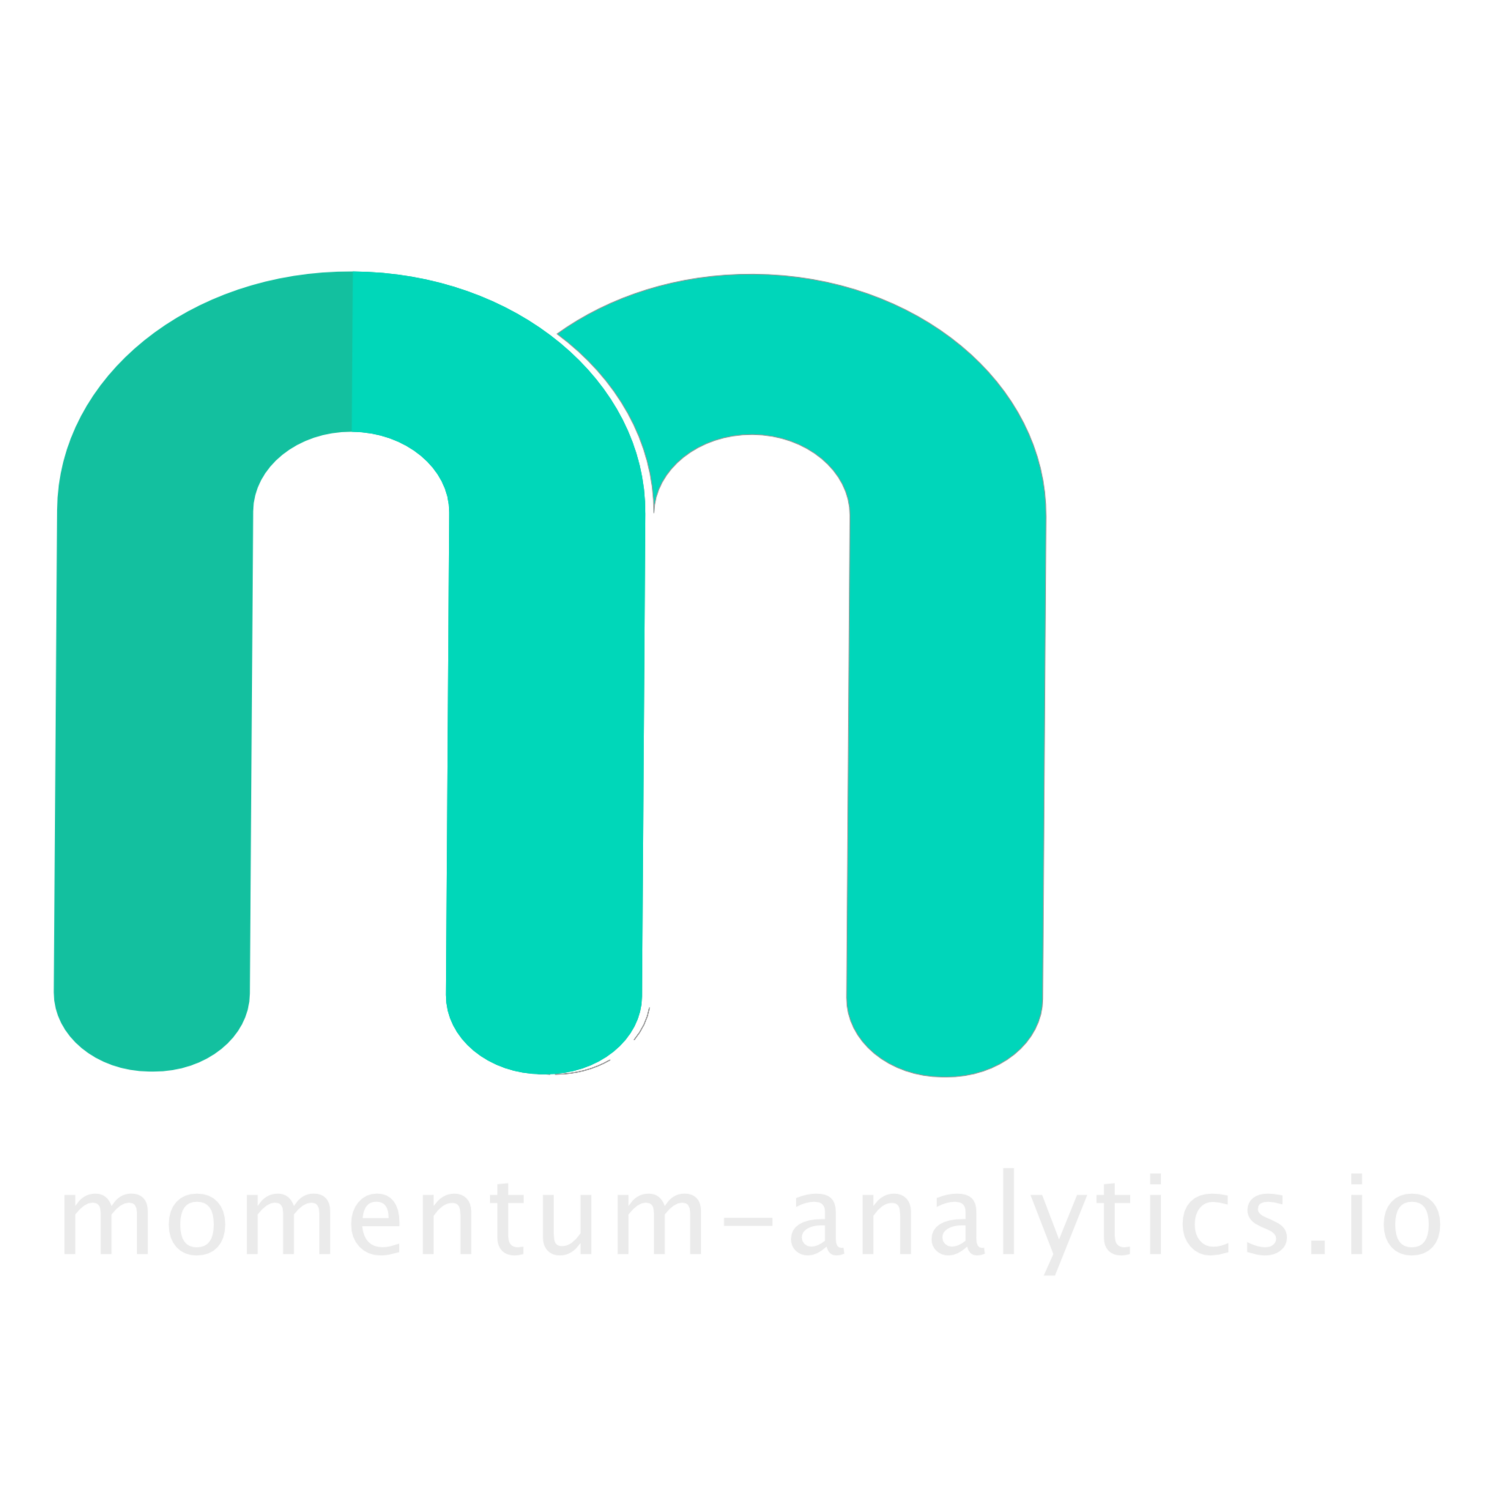 momentum-analytics.io